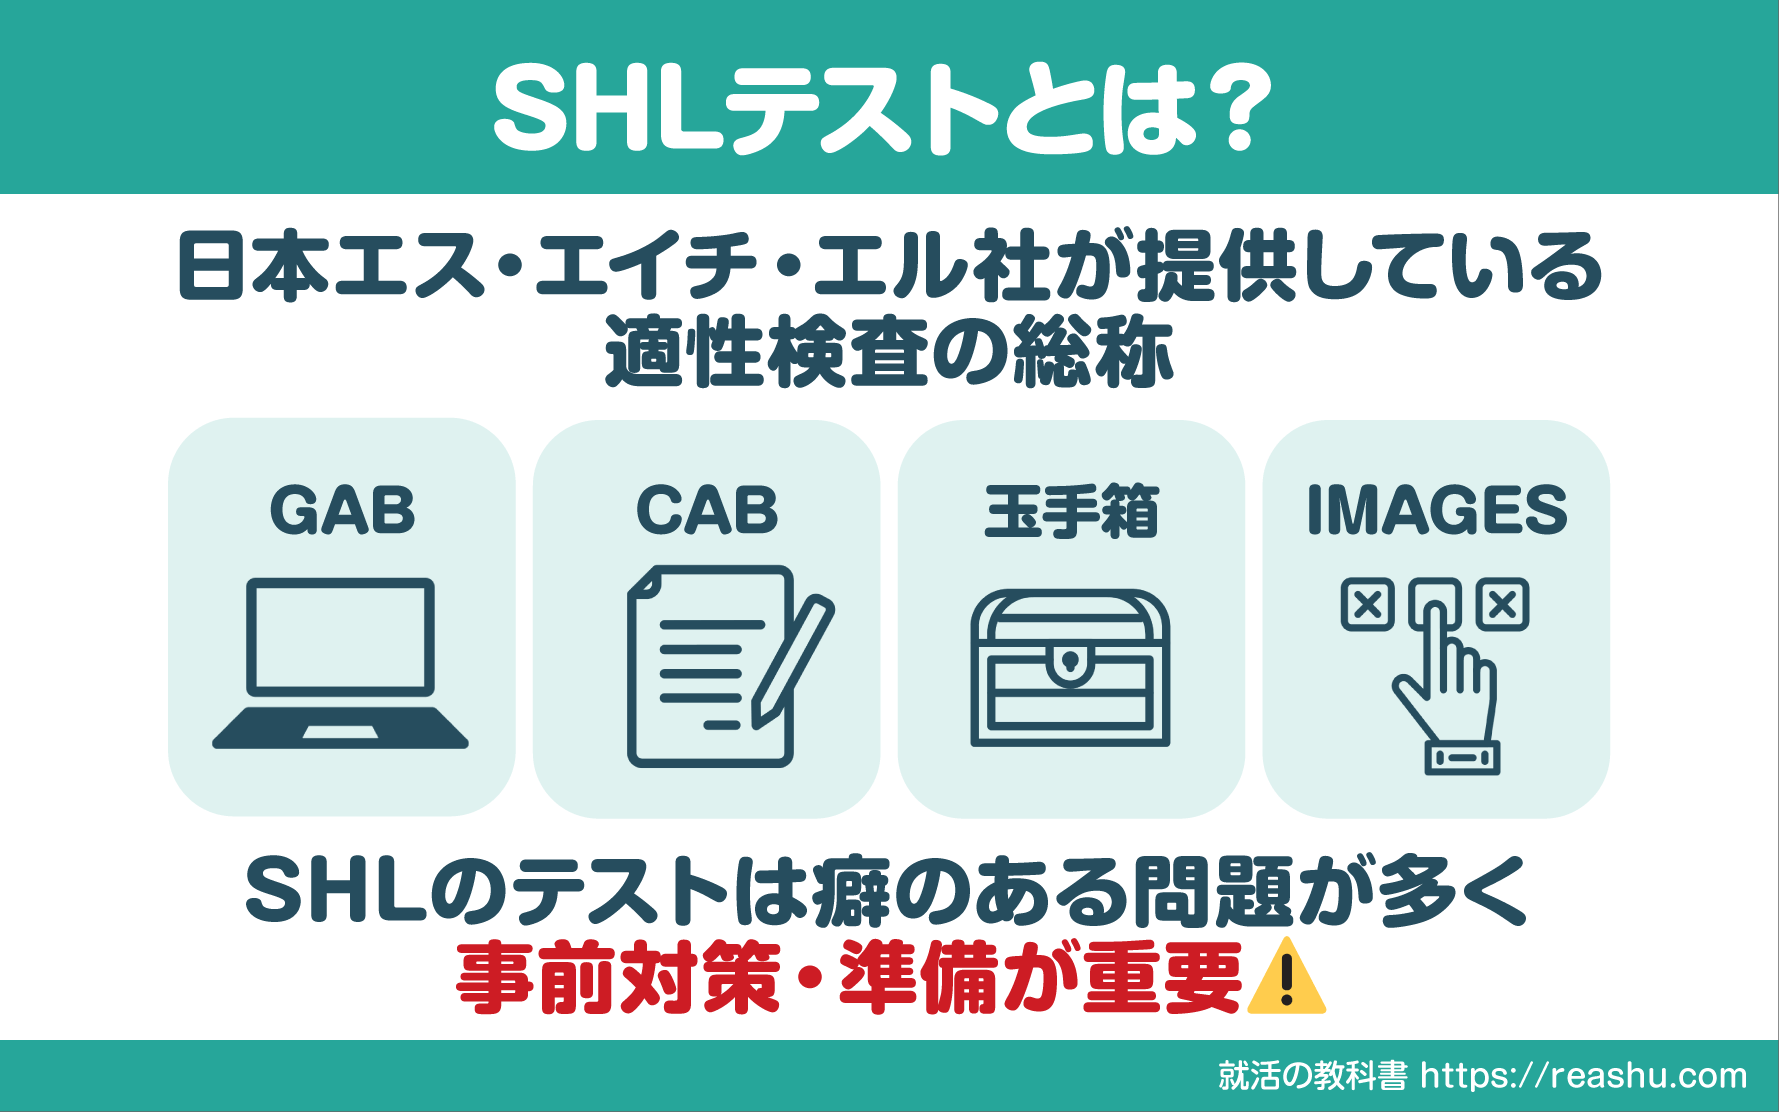 SHLテストは日本エスエイチエル社の適性検査